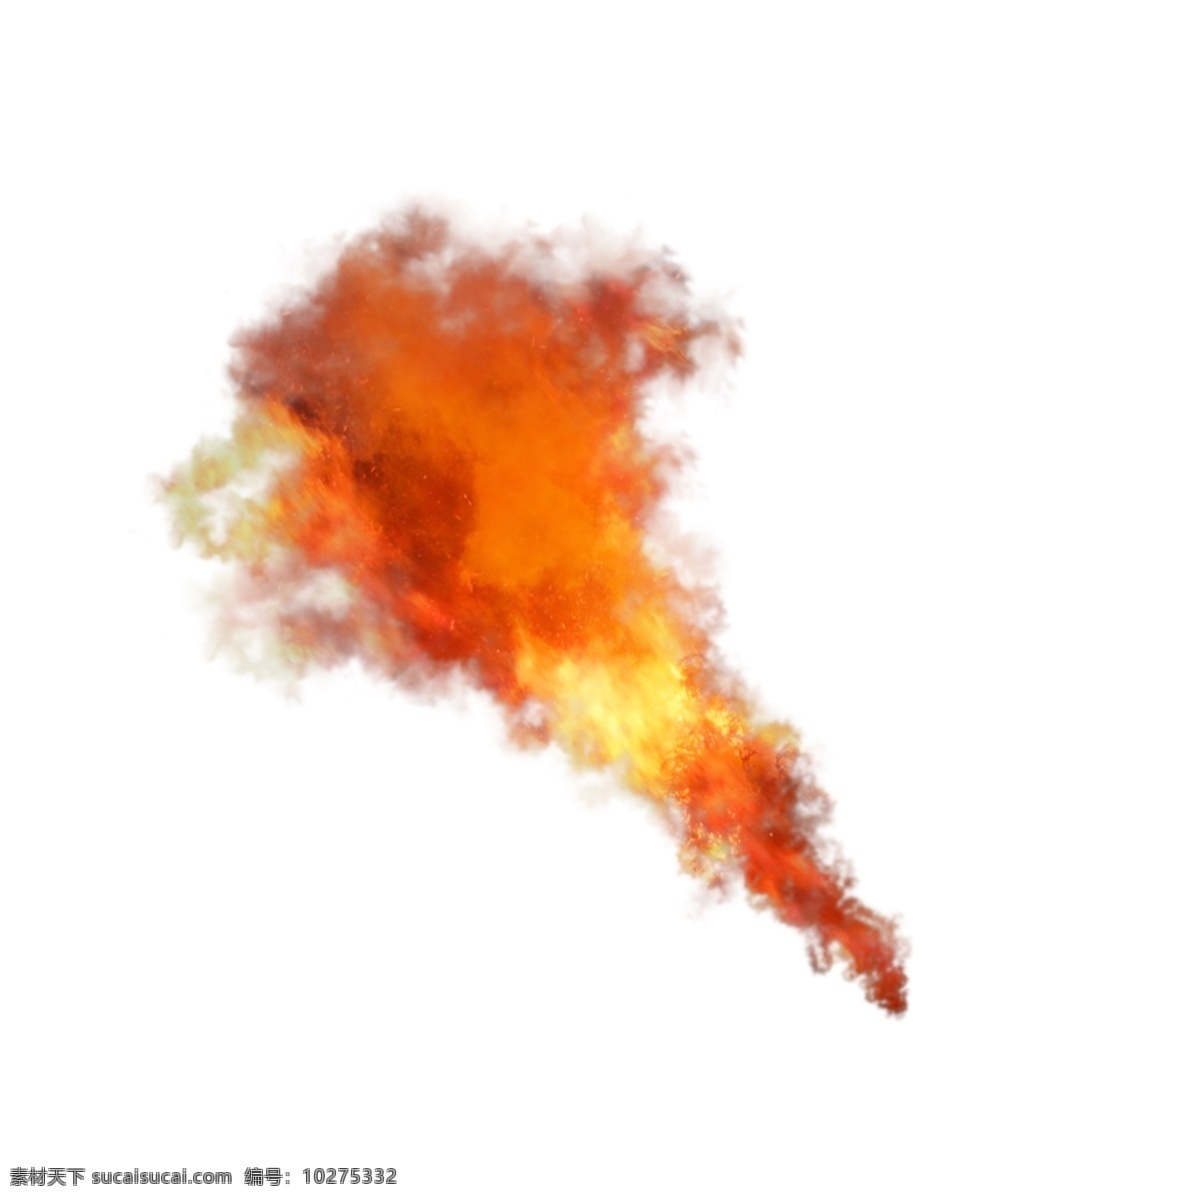 红色 写实 腾空 火焰 火苗 元素 燃烧 爆炸 炎热 火焰特效 燃烧的火焰 火焰烟雾 红色火焰 喷火 战争特效